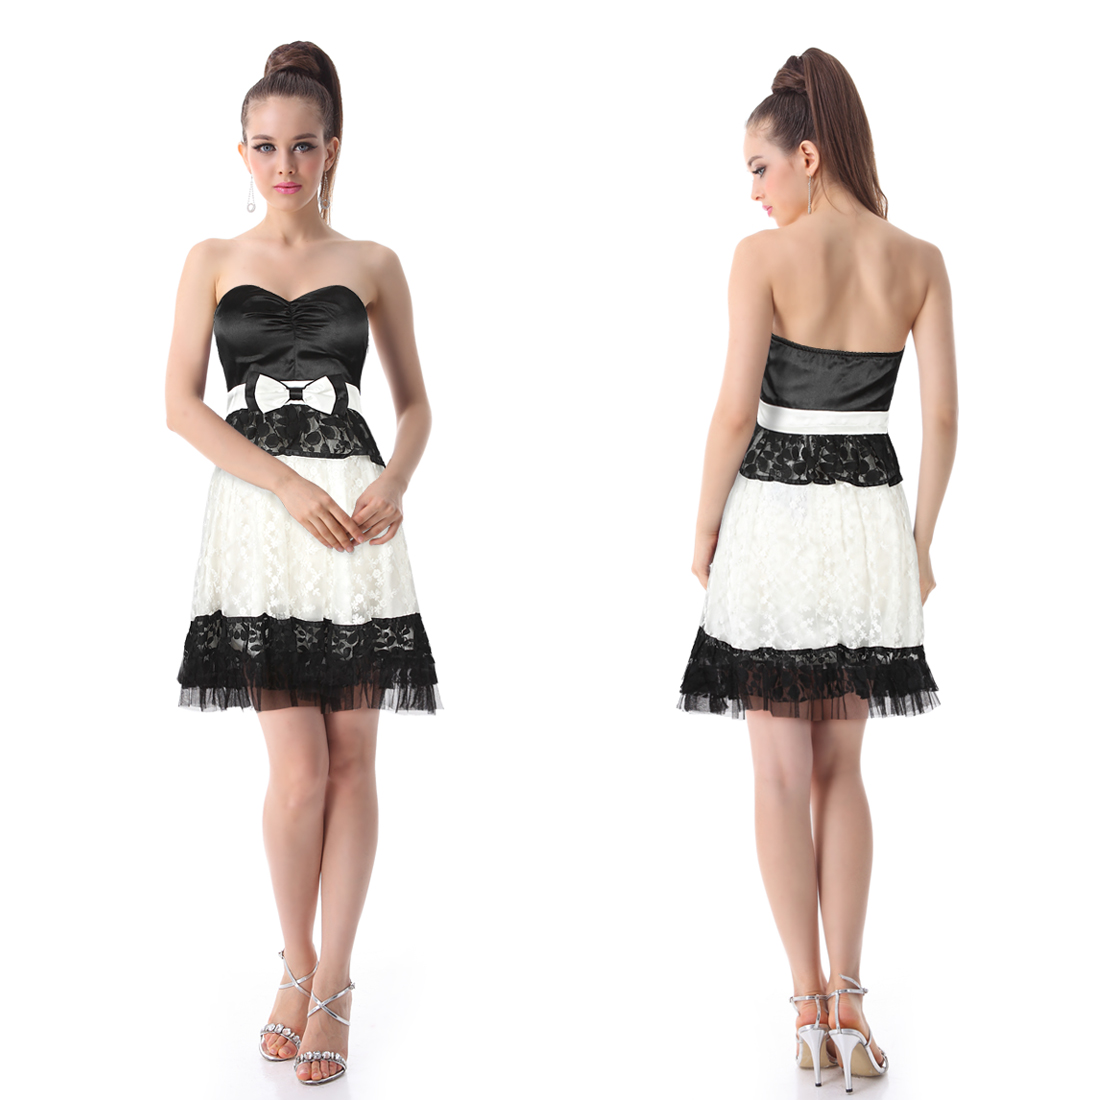 Charming Strapless White Black Lace Bowtie Short Club Dresses 03070 AU 